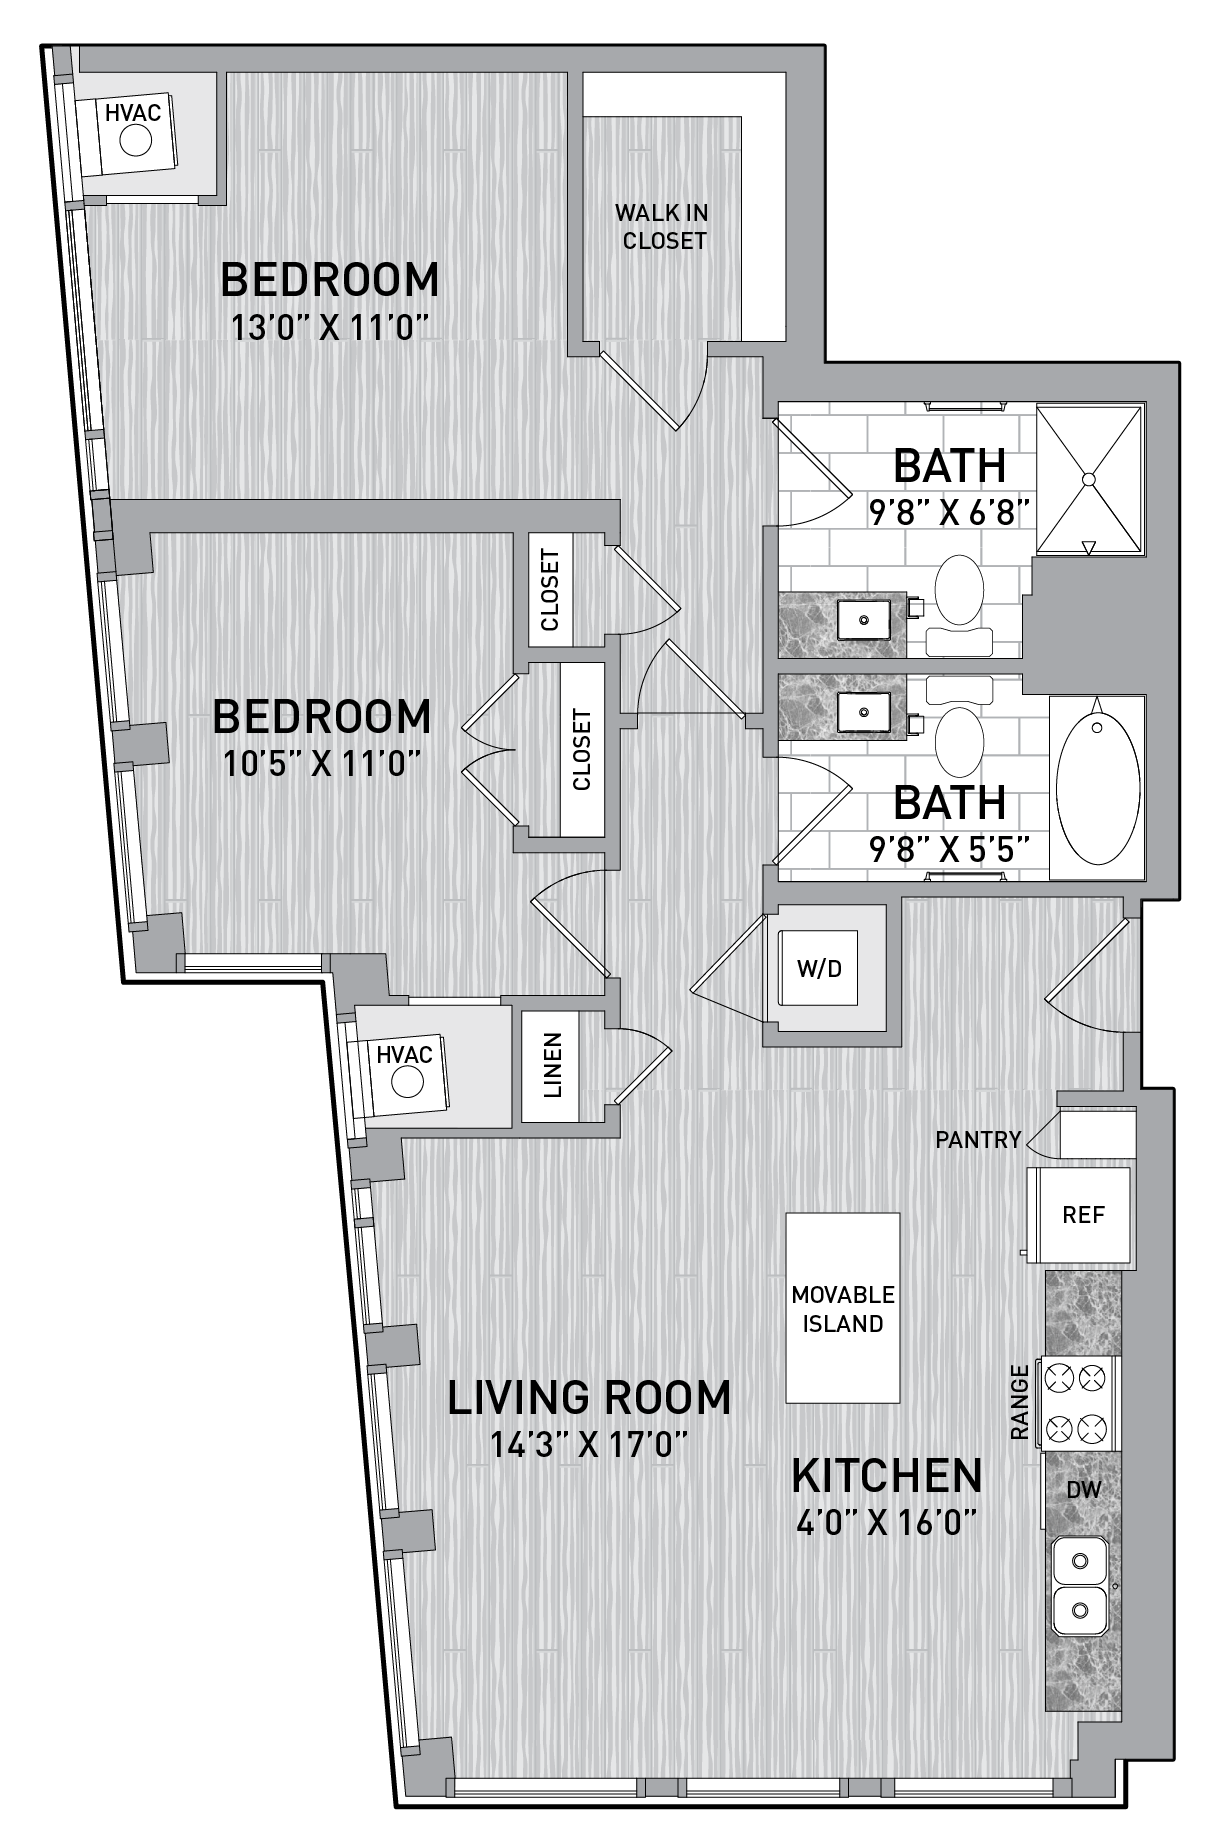 floorplan image of unit id 0402